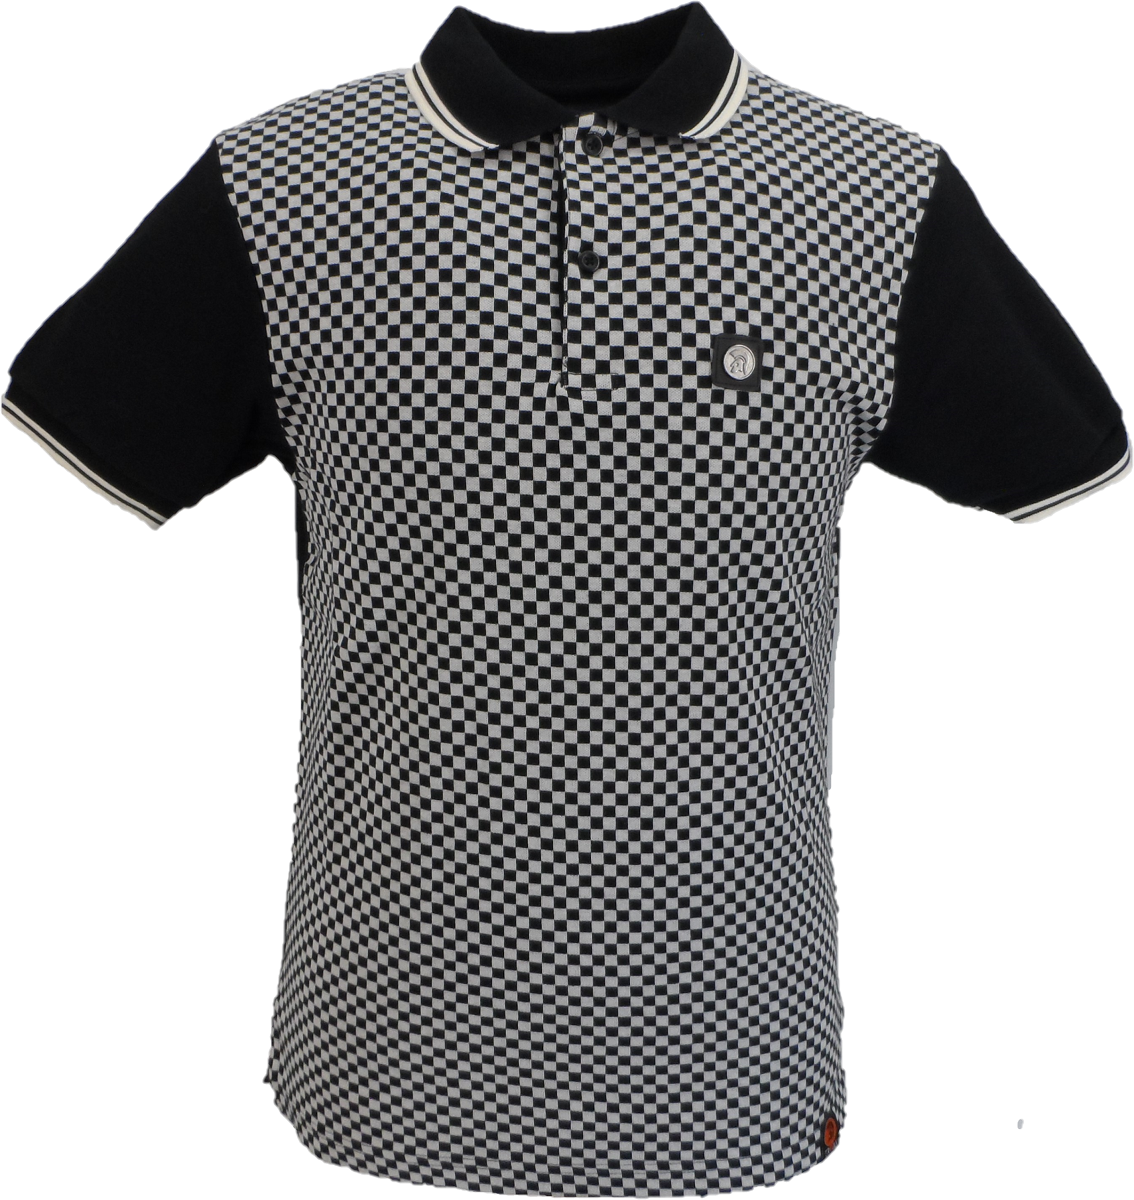 Trojan Records Black/White Retro Polo Chequerboard Shirts